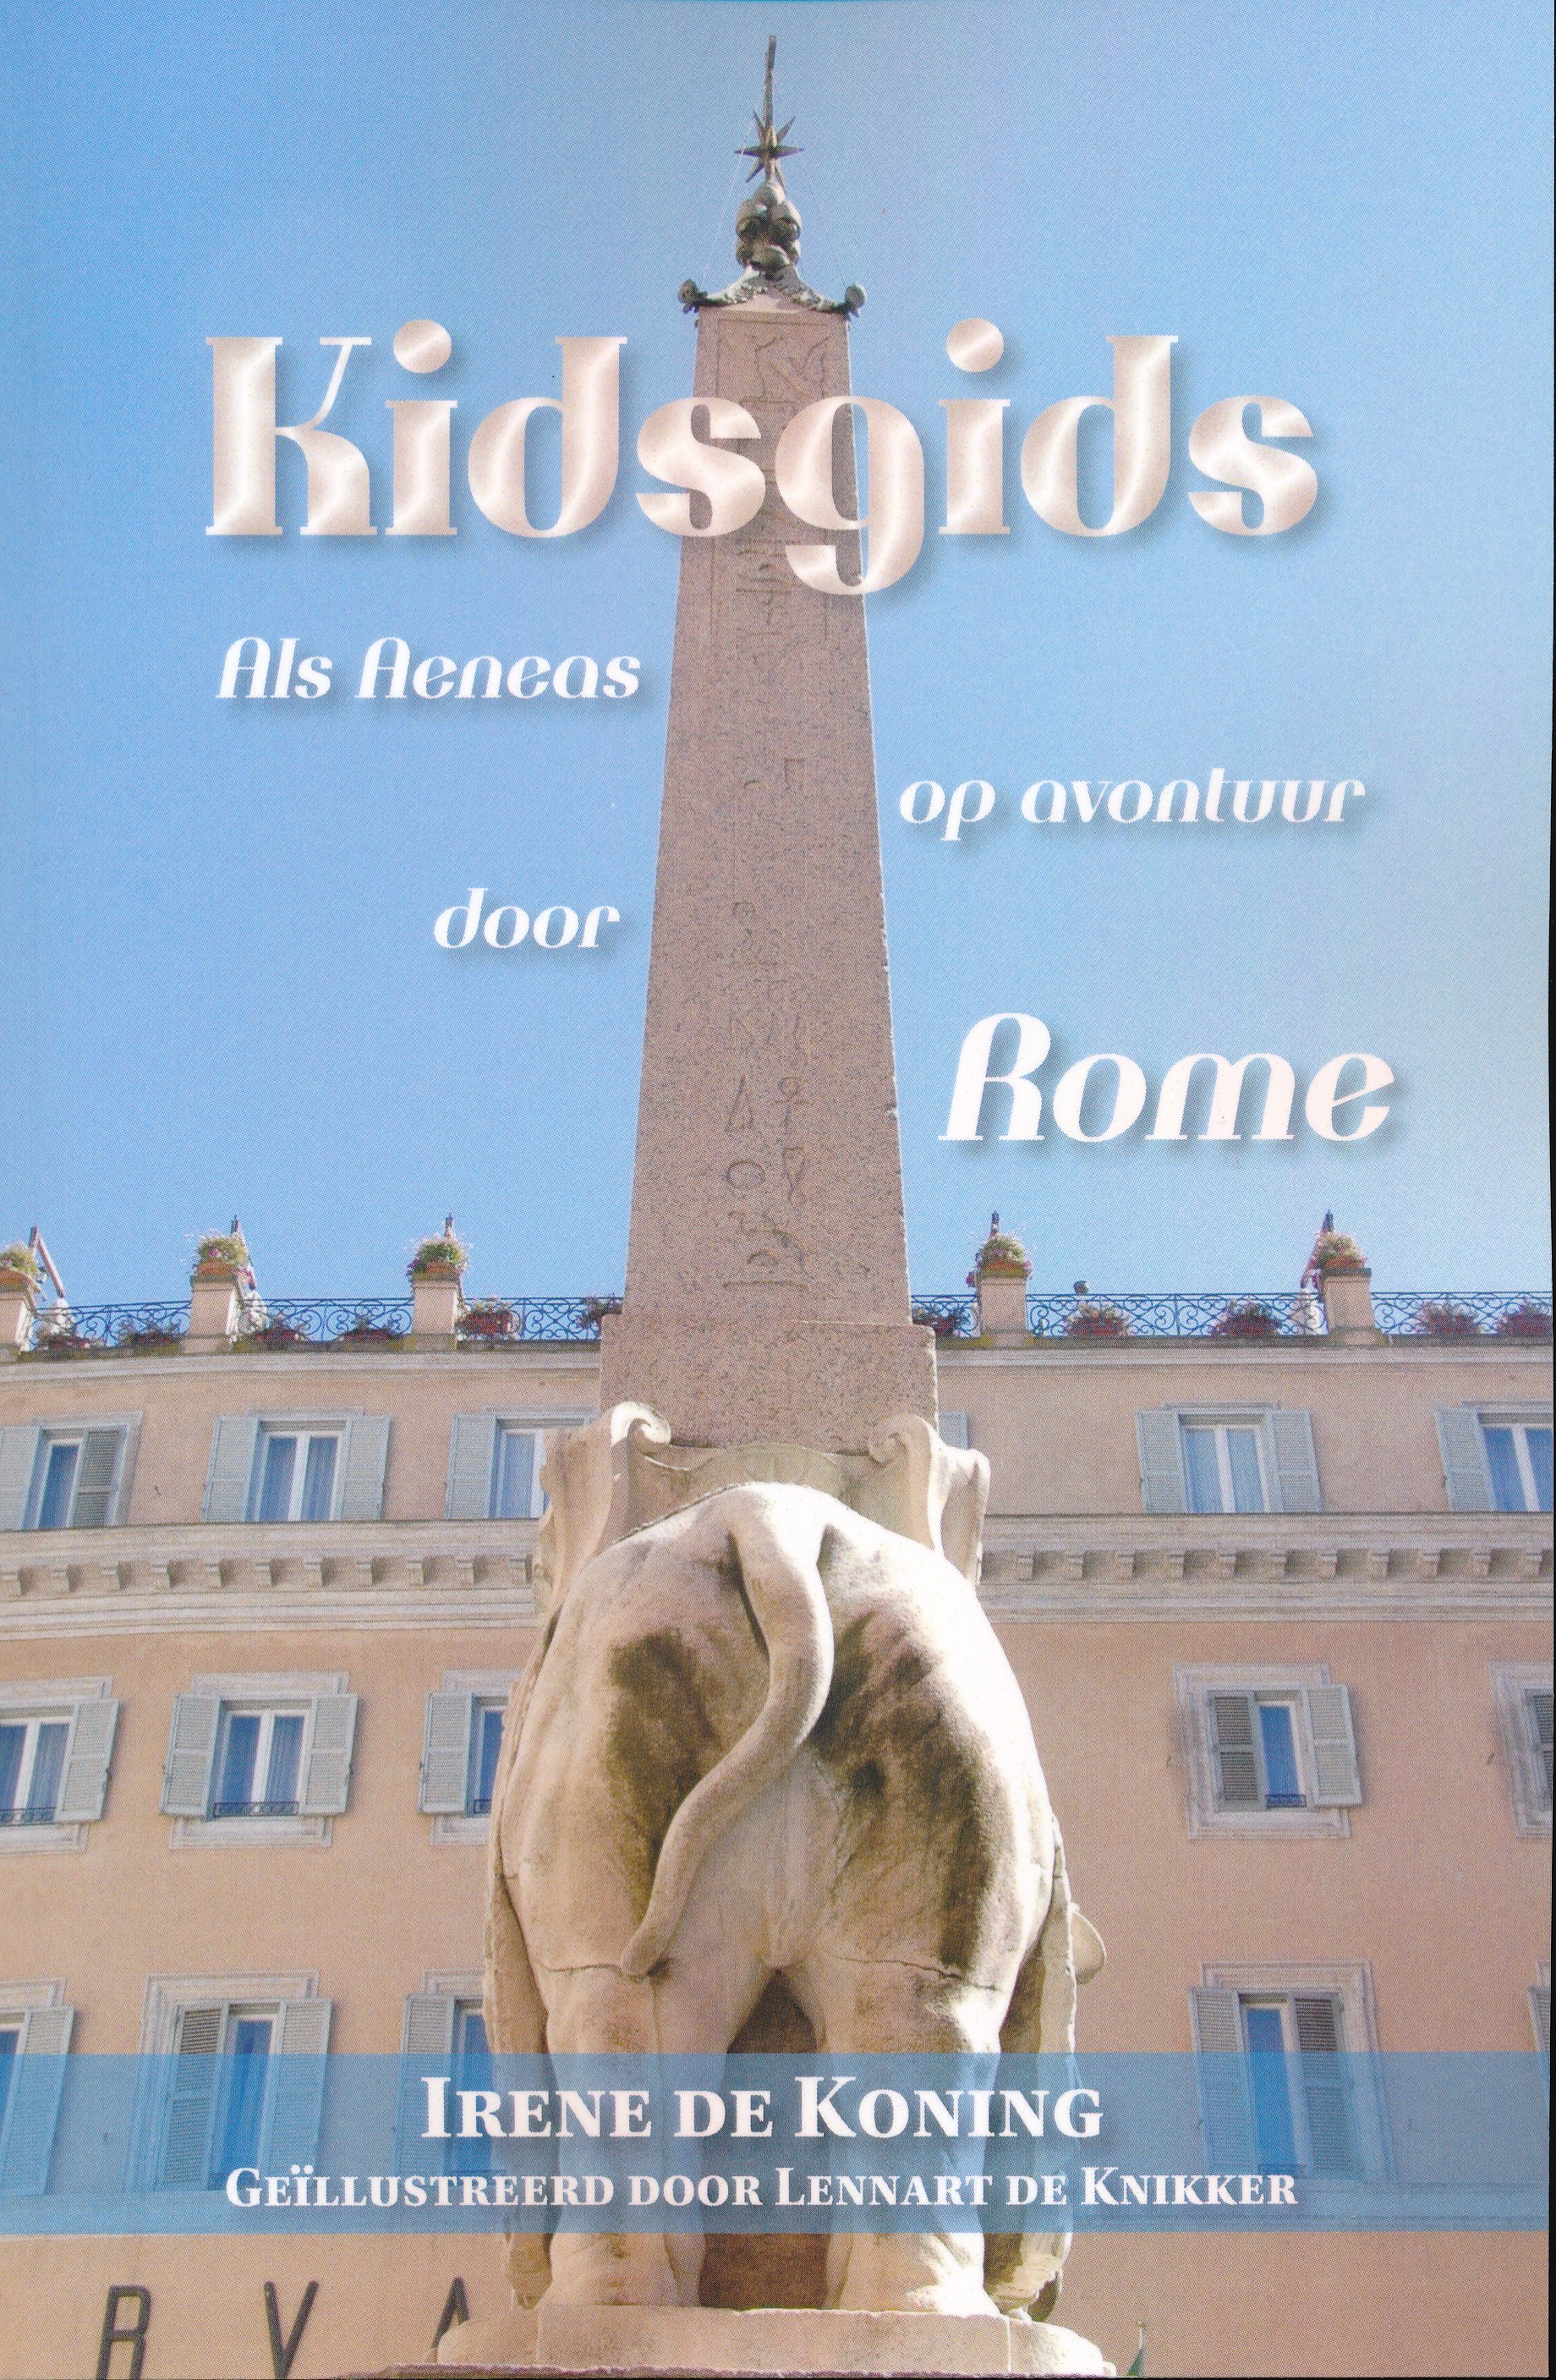 Online bestellen: Kinderreisgids Kidsgids Als Aeneas op avontuur door Rome | Boekscout